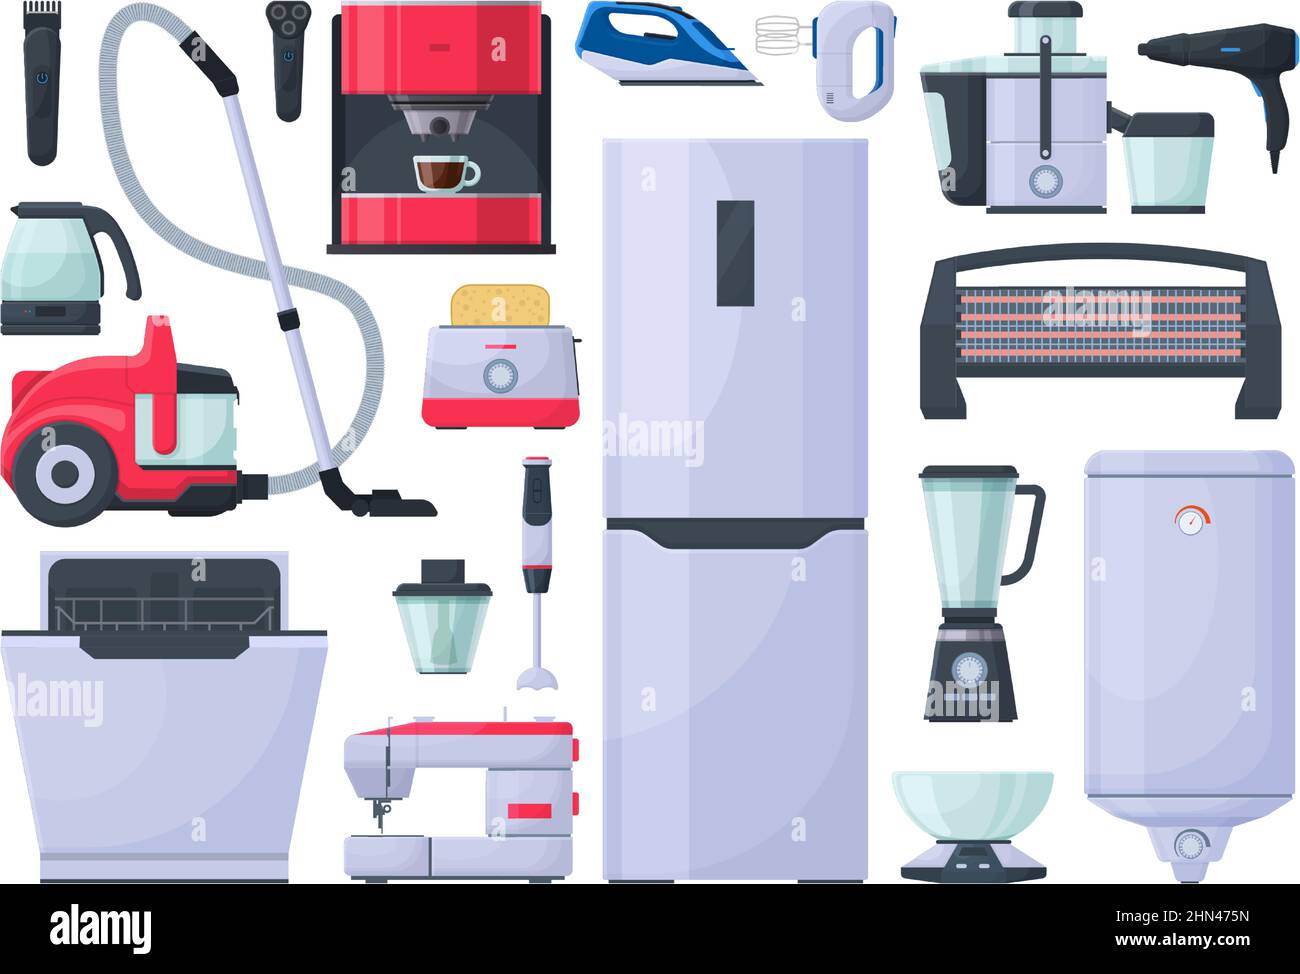 https://c8.alamy.com/compde/2hn475n/haushaltsgerate-staubsauger-bugeleisen-und-kaffeemaschine-kuhlschrank-mixer-und-toaster-elektronische-gadgets-vektor-illustration-set-elektrisch-2hn475n.jpg